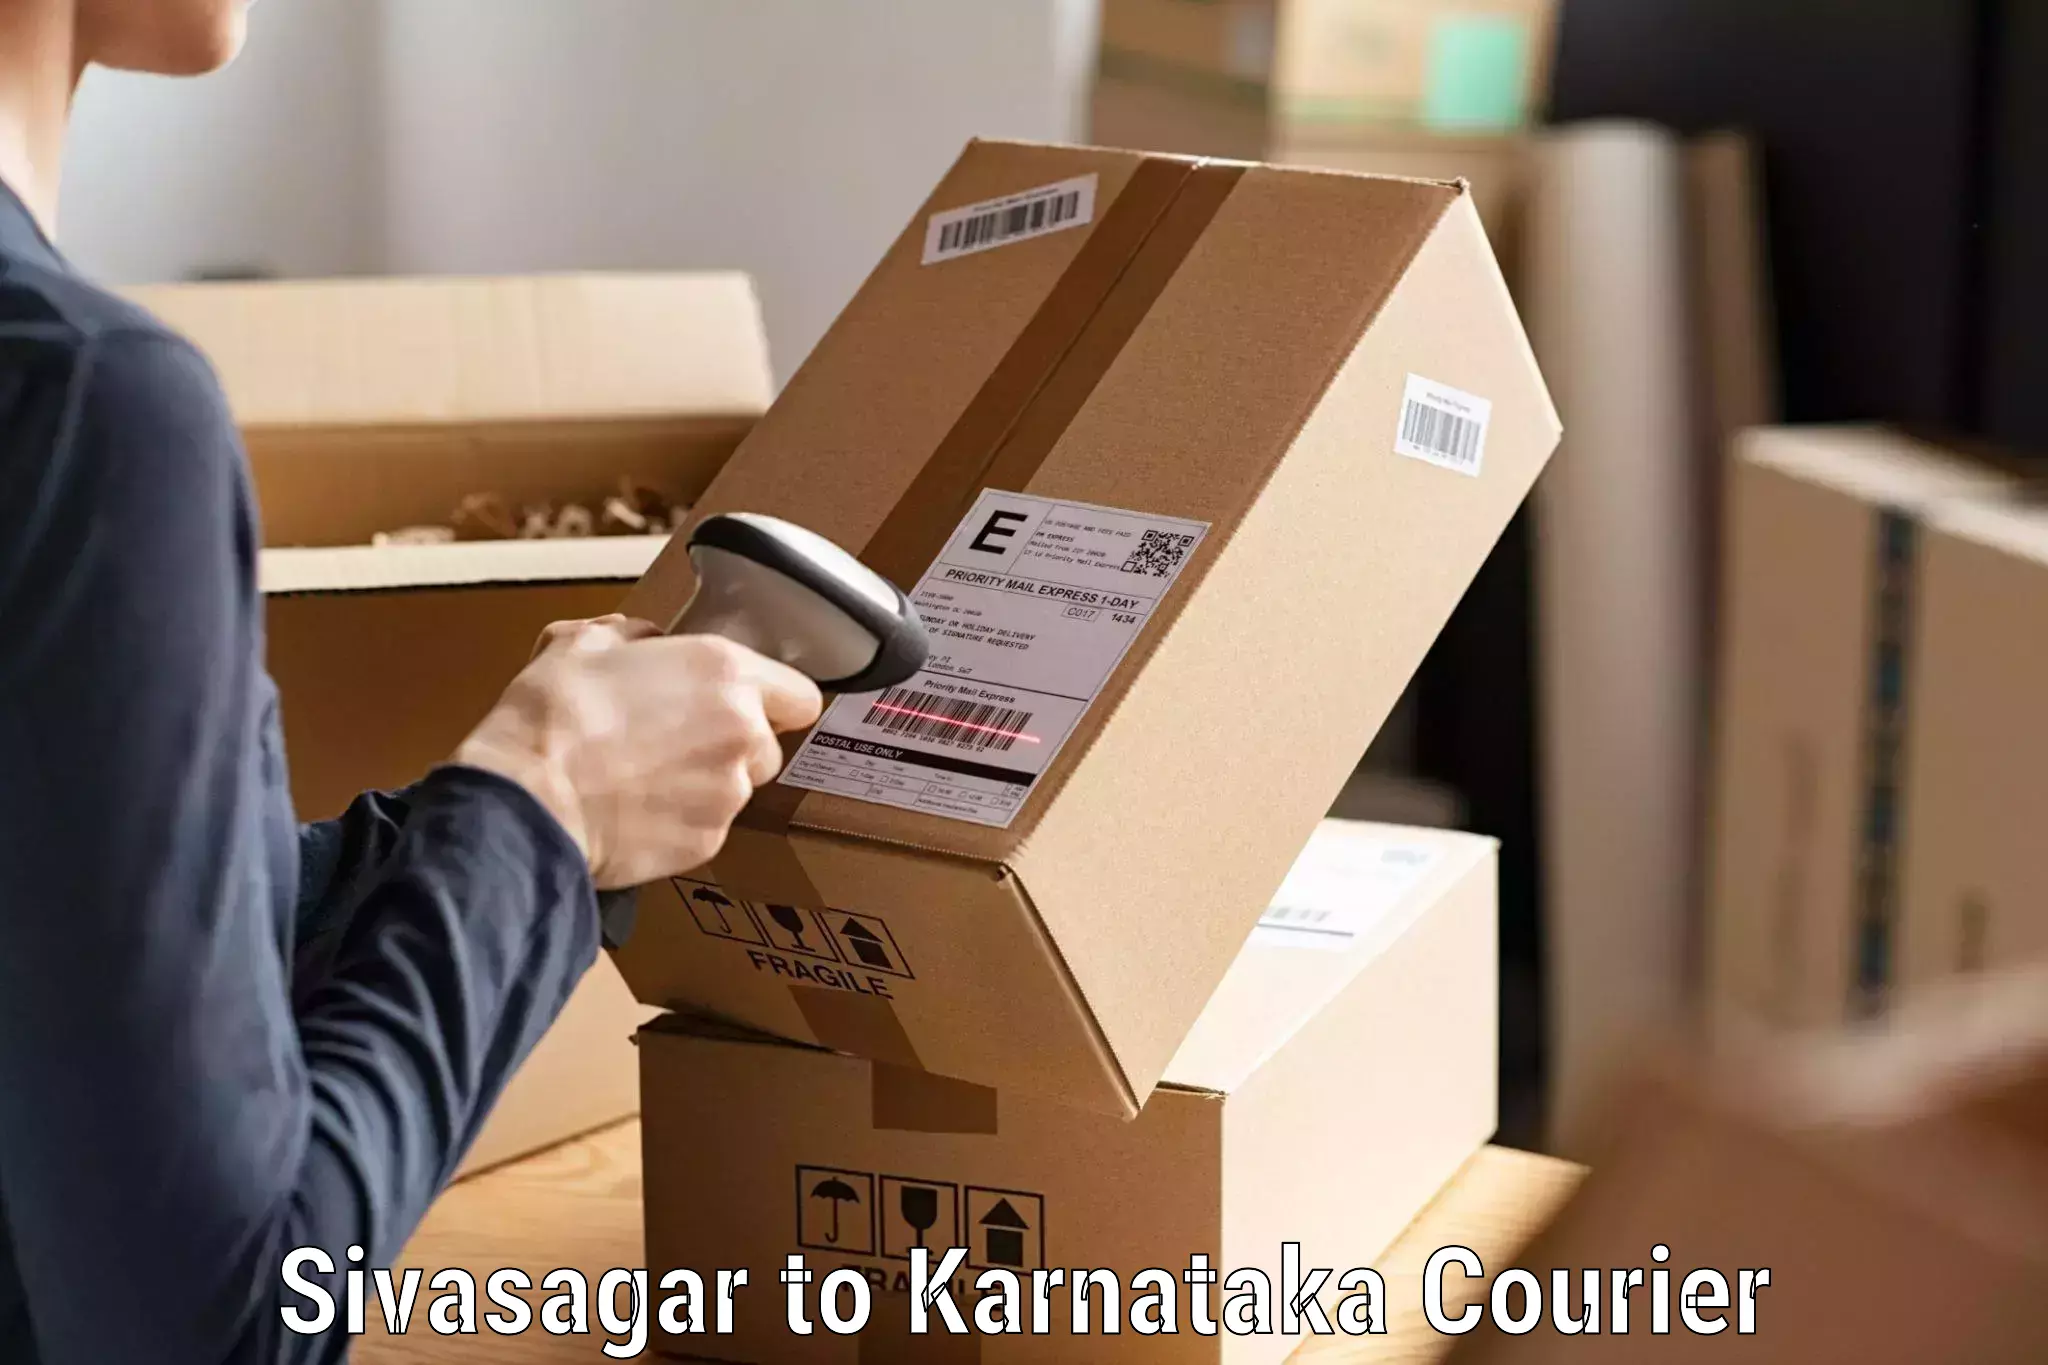 Cargo delivery service Sivasagar to Sira